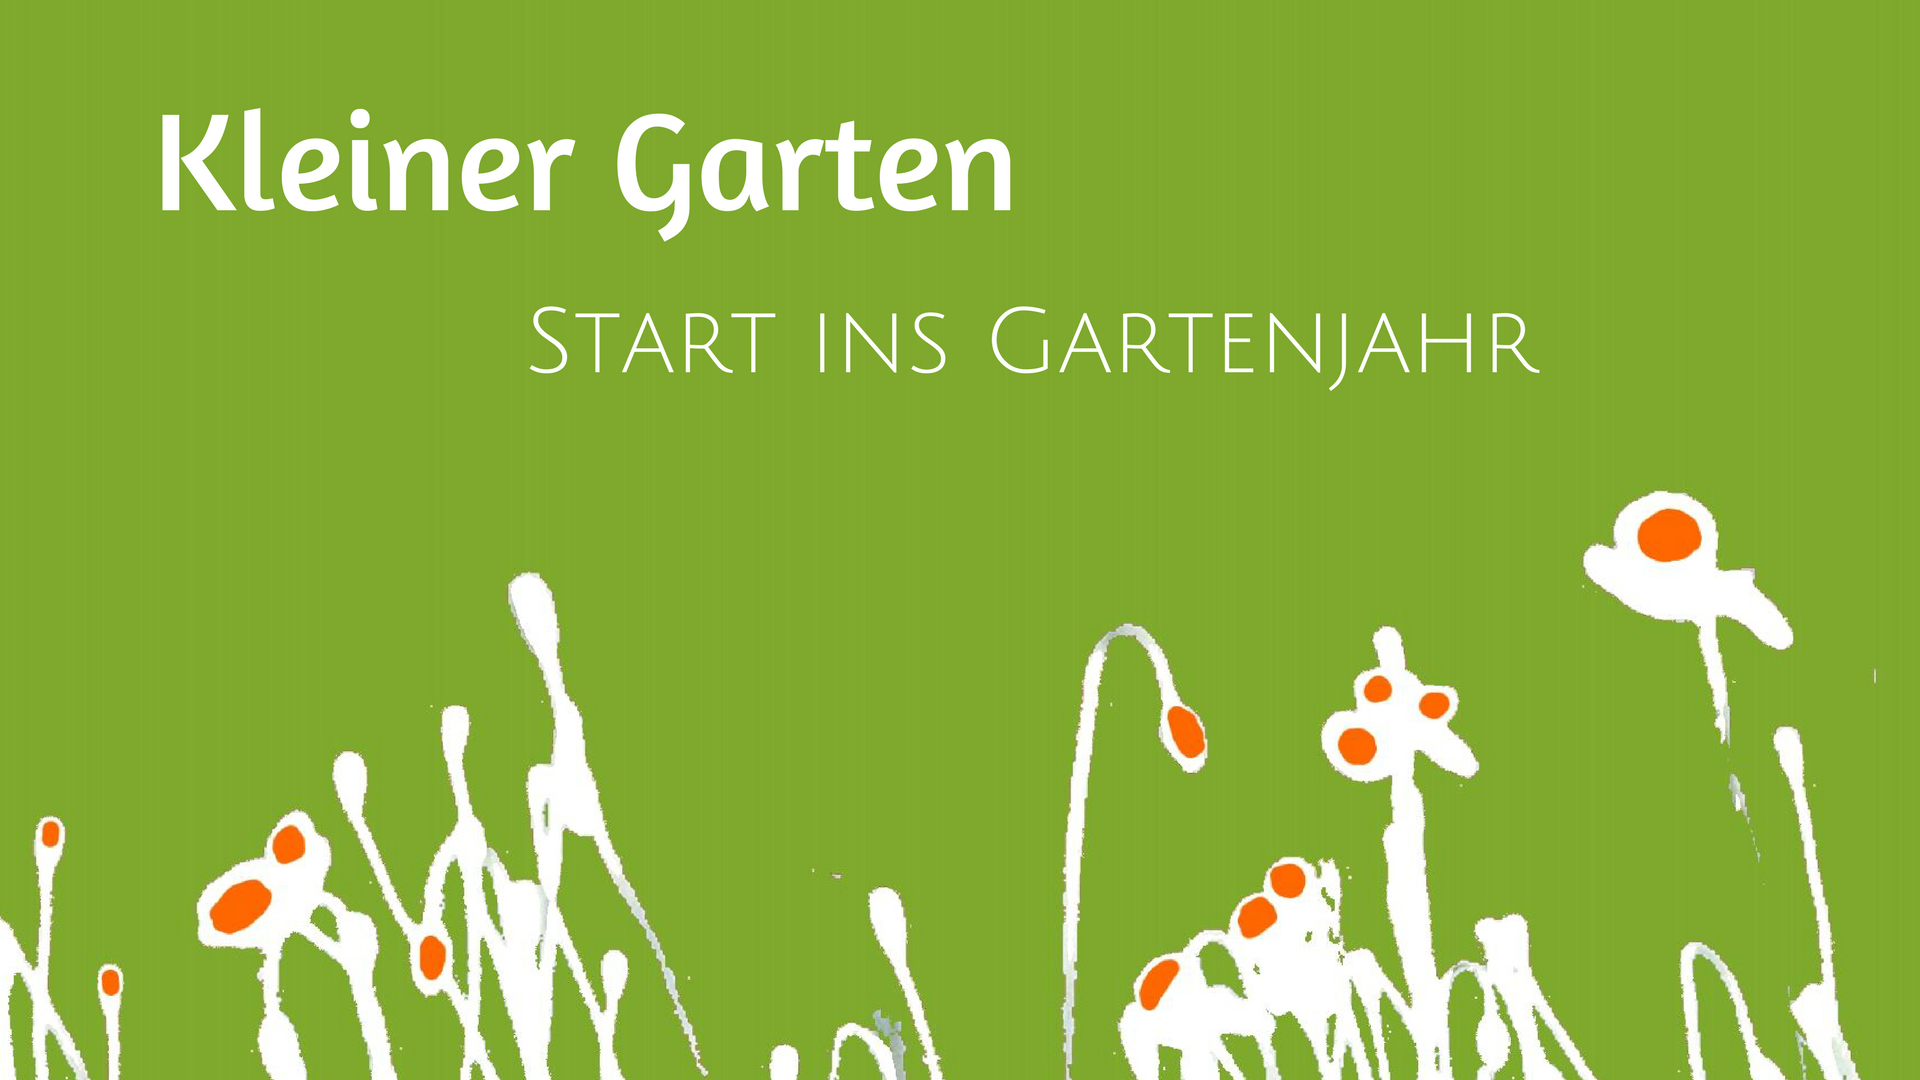 Start ins Gartenjahr